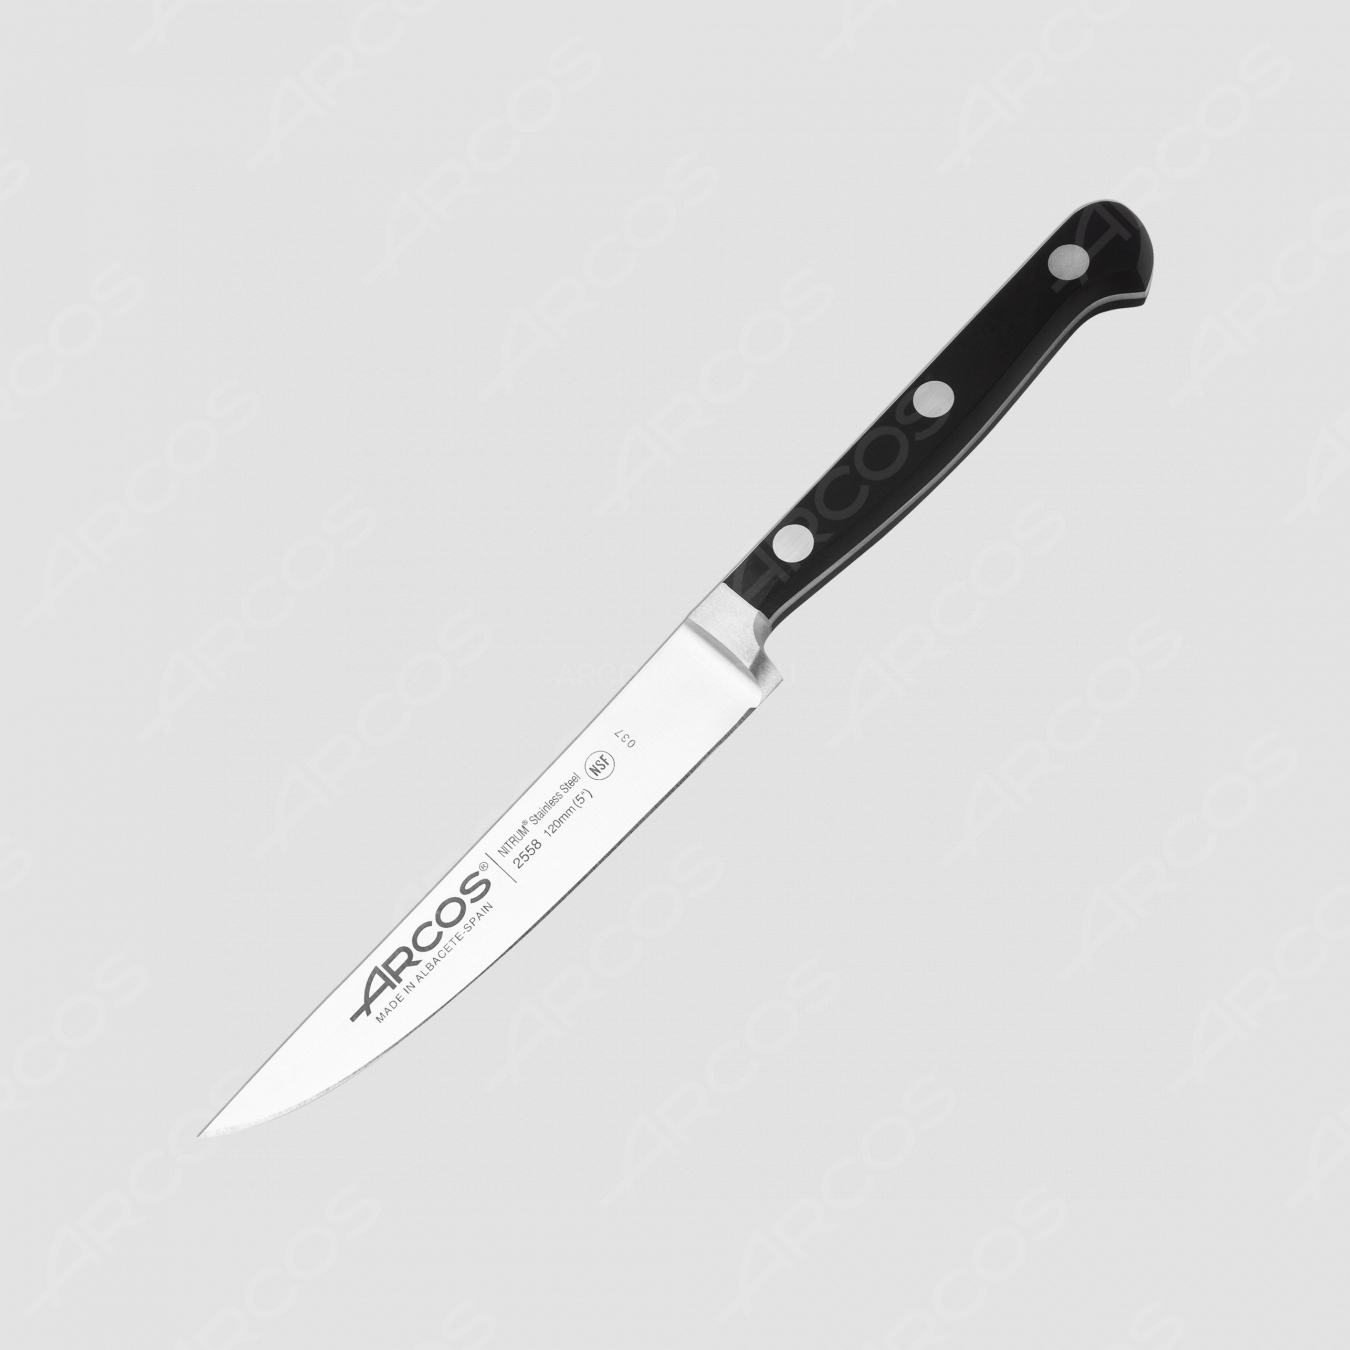 Нож кухонный для стейка 12 см, серия Clasica, ARCOS, Испания